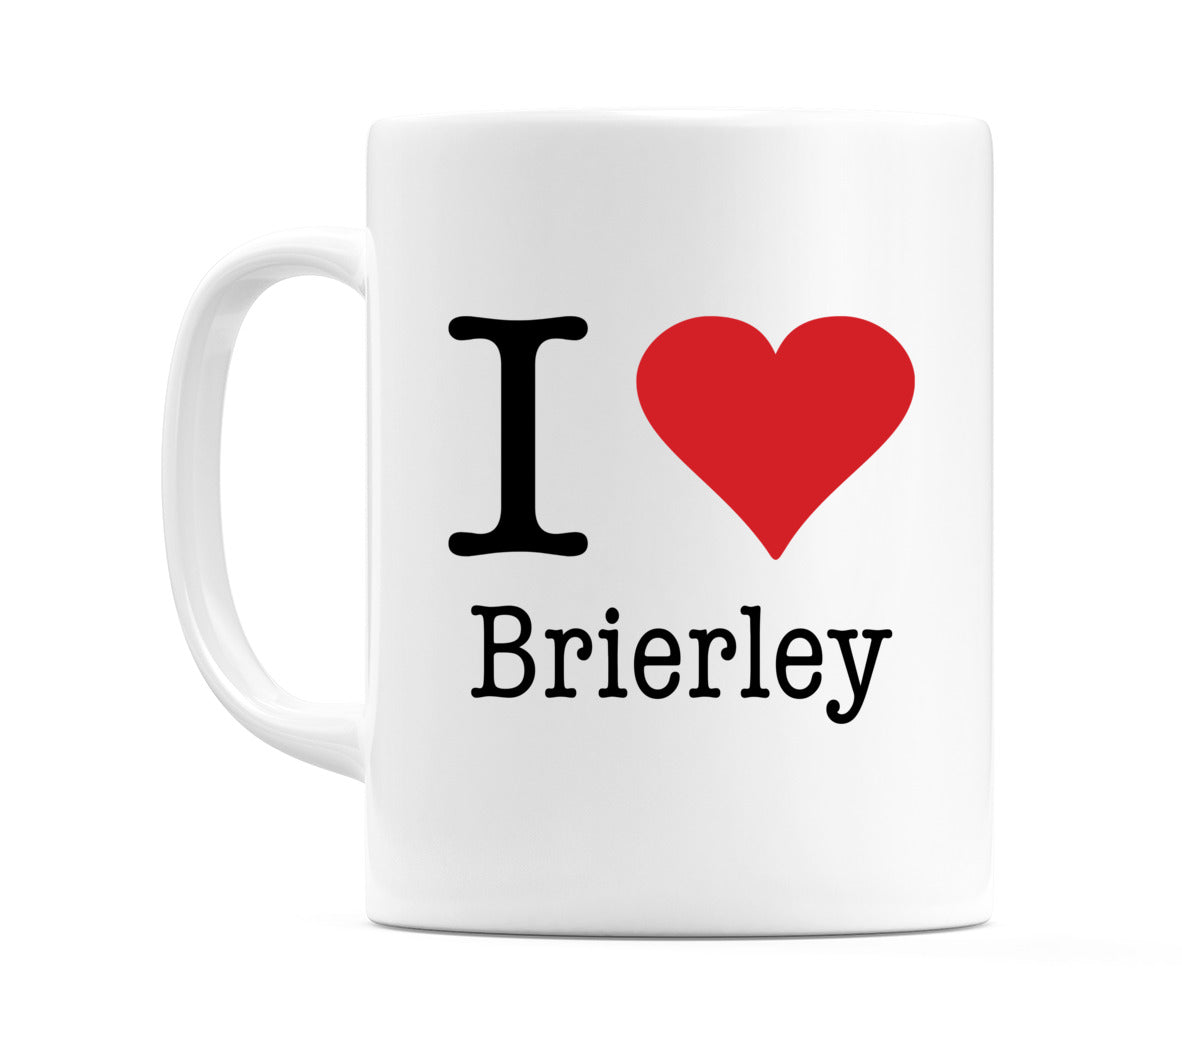 I Love Brierley Mug